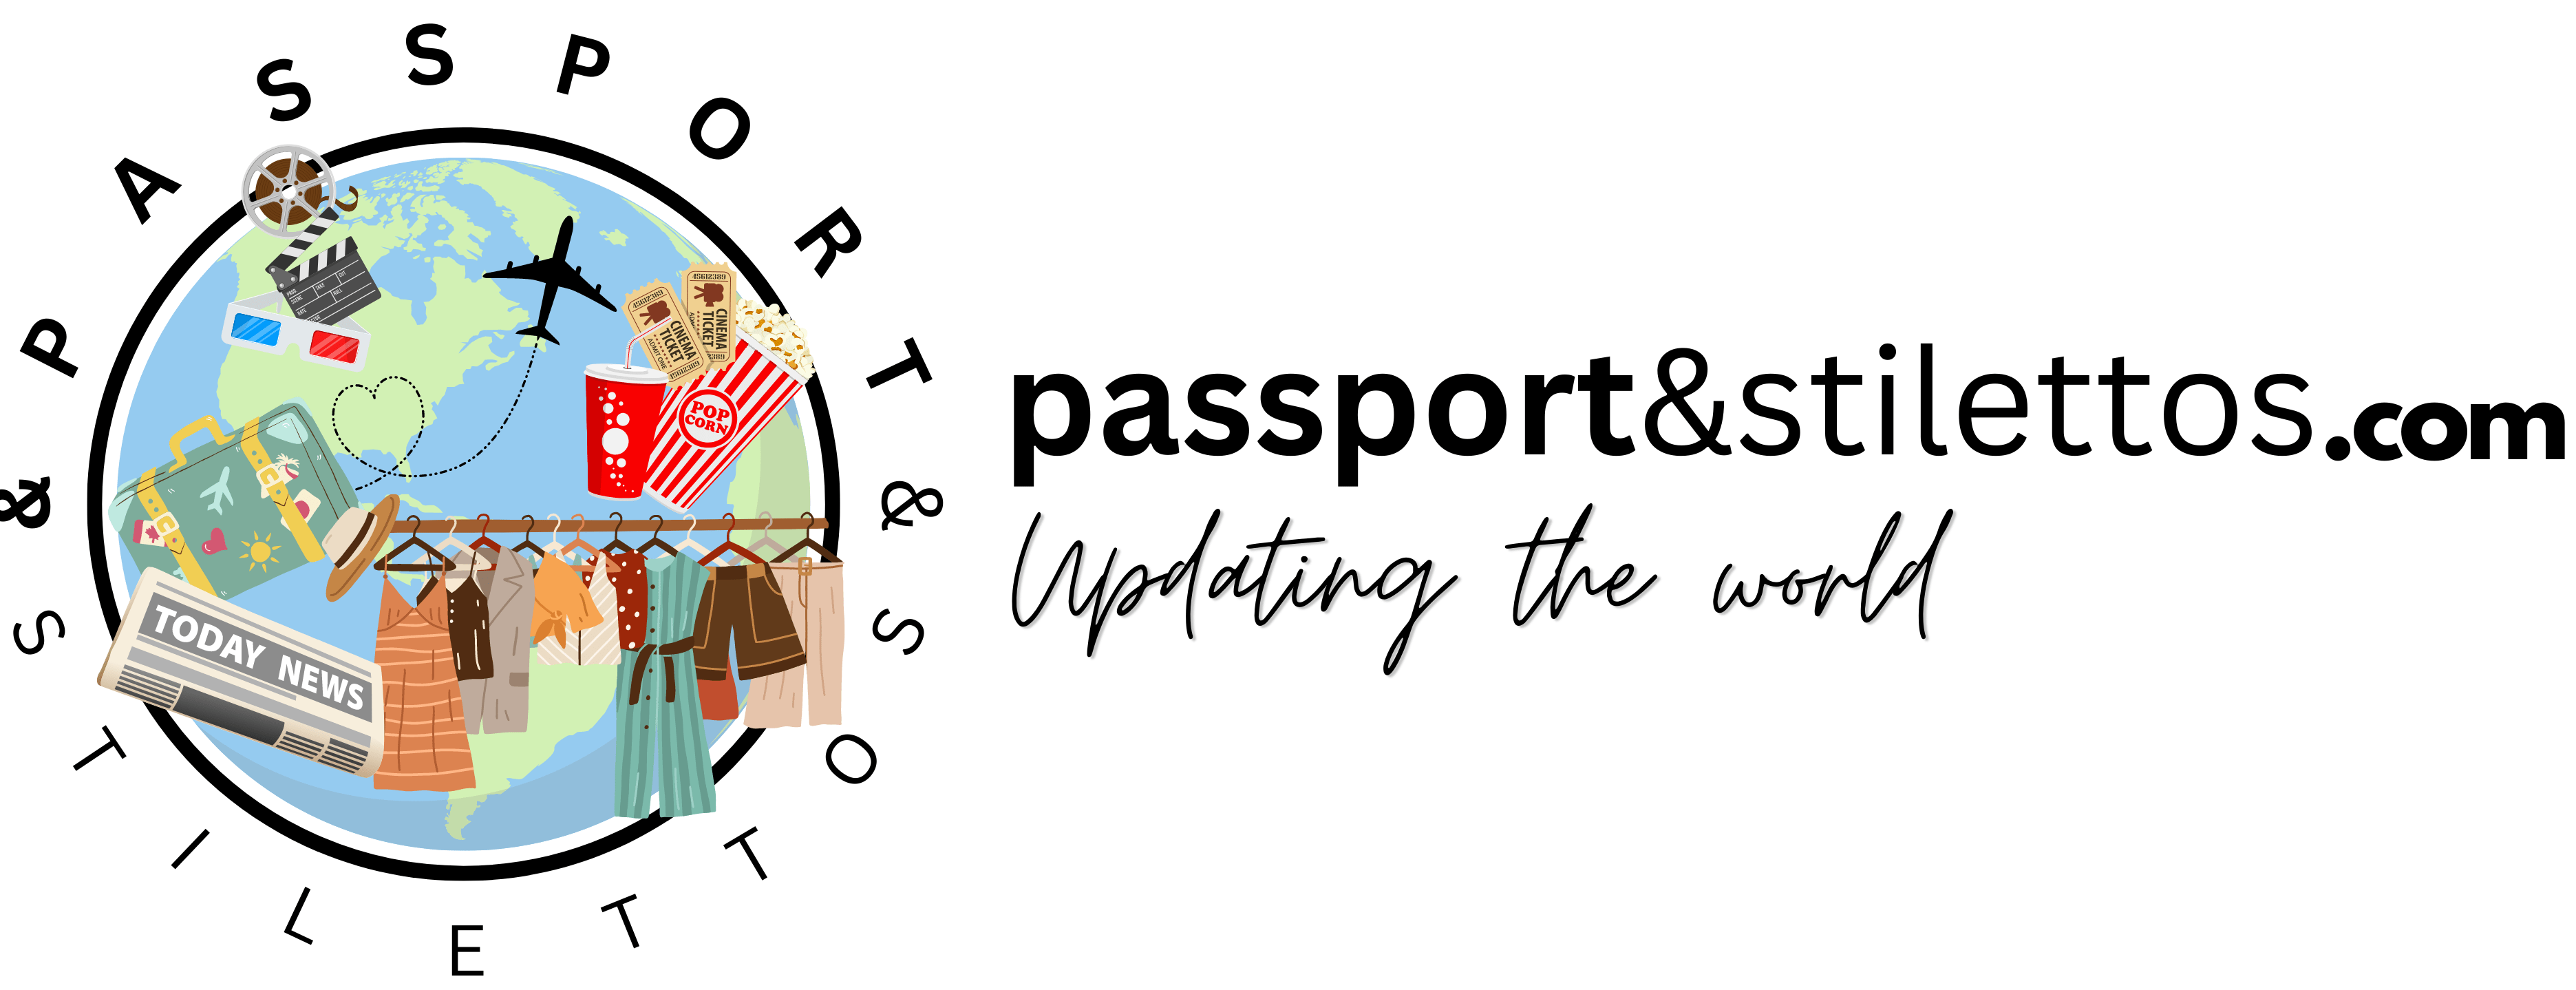 Passport&Stilettos – Updating the world!